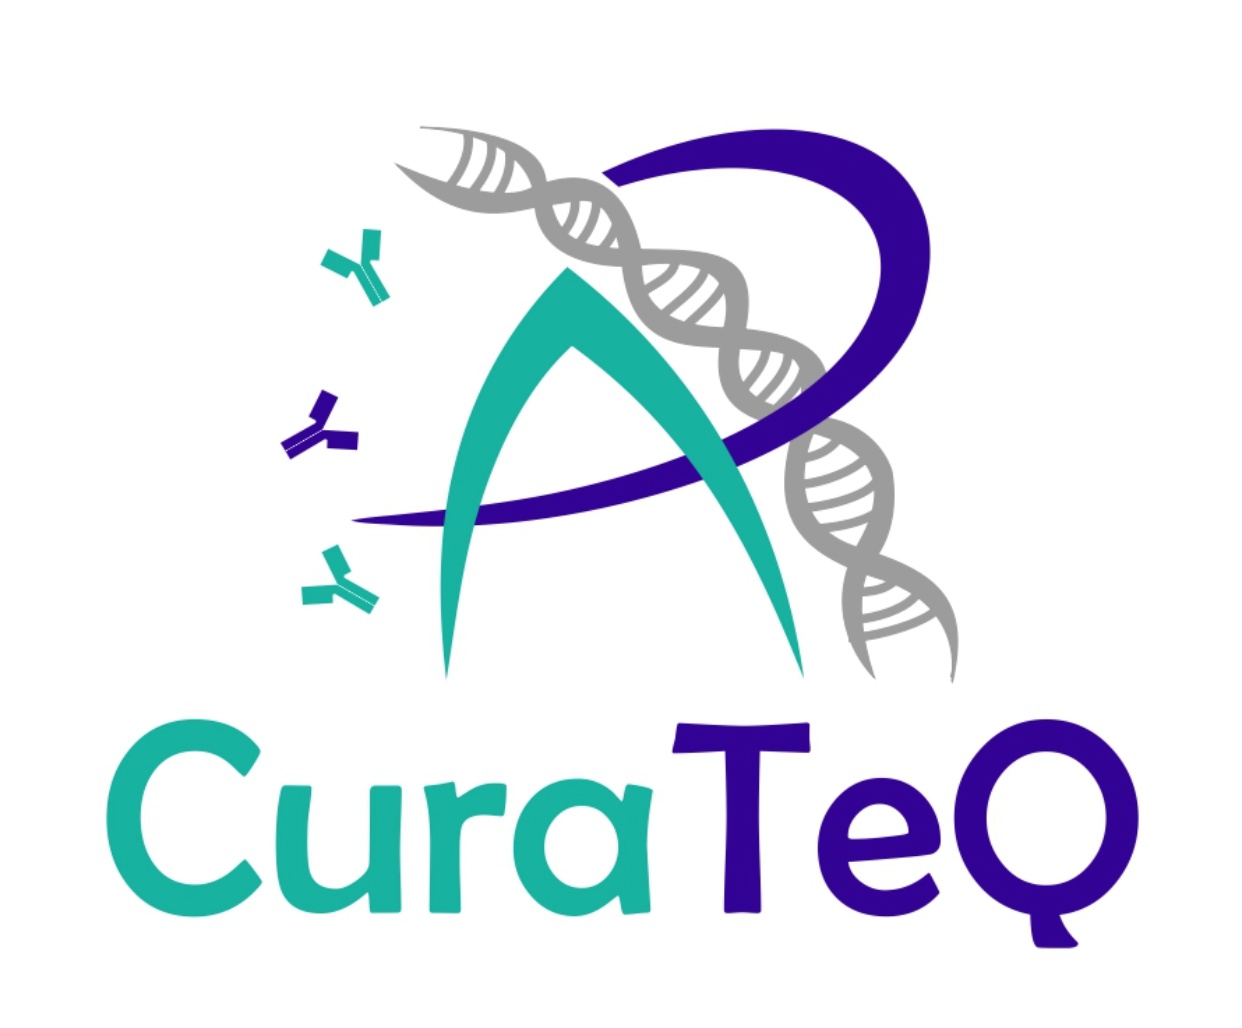 CuraTeQ Biologics